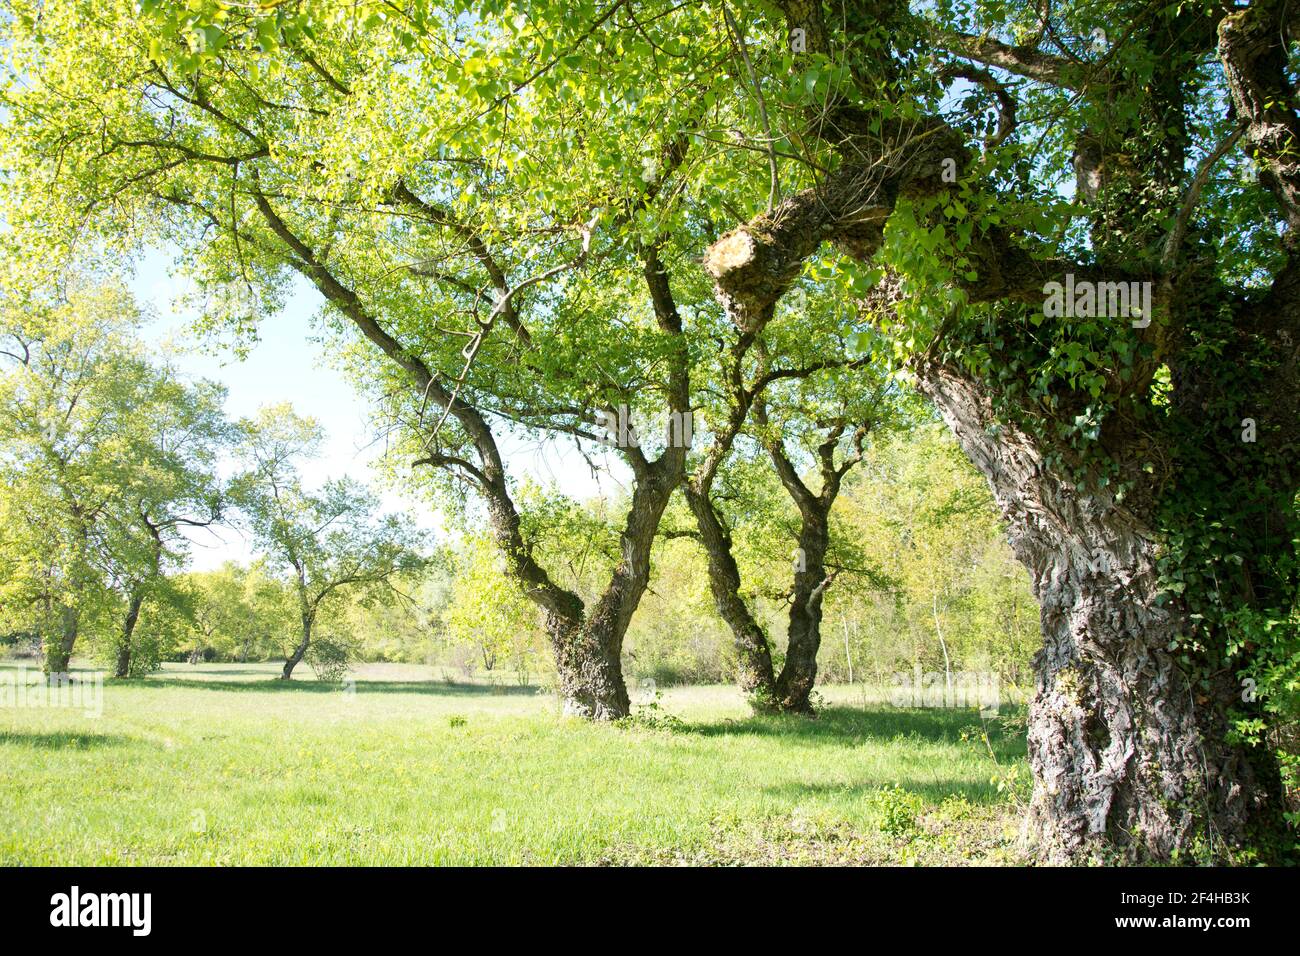 Altehrwürdige Lindenbäume im elsässischen Naturschutzgebiet Petite Camarque Alsacienne Foto Stock